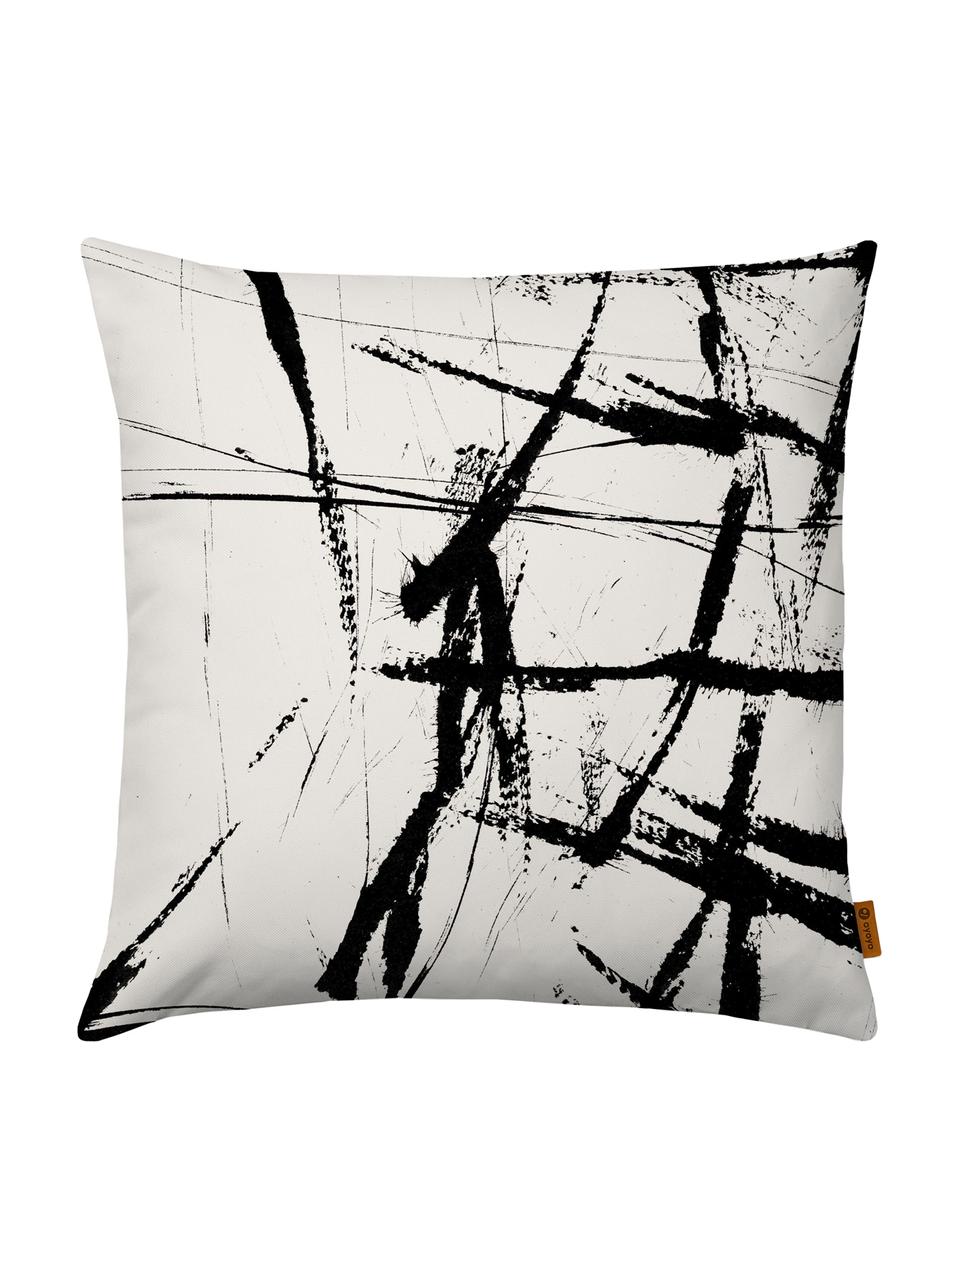 Kussenhoes Neven met abstract print in zwart/wit, Polyester, Wit met zwarte vlekken, 40 x 40 cm